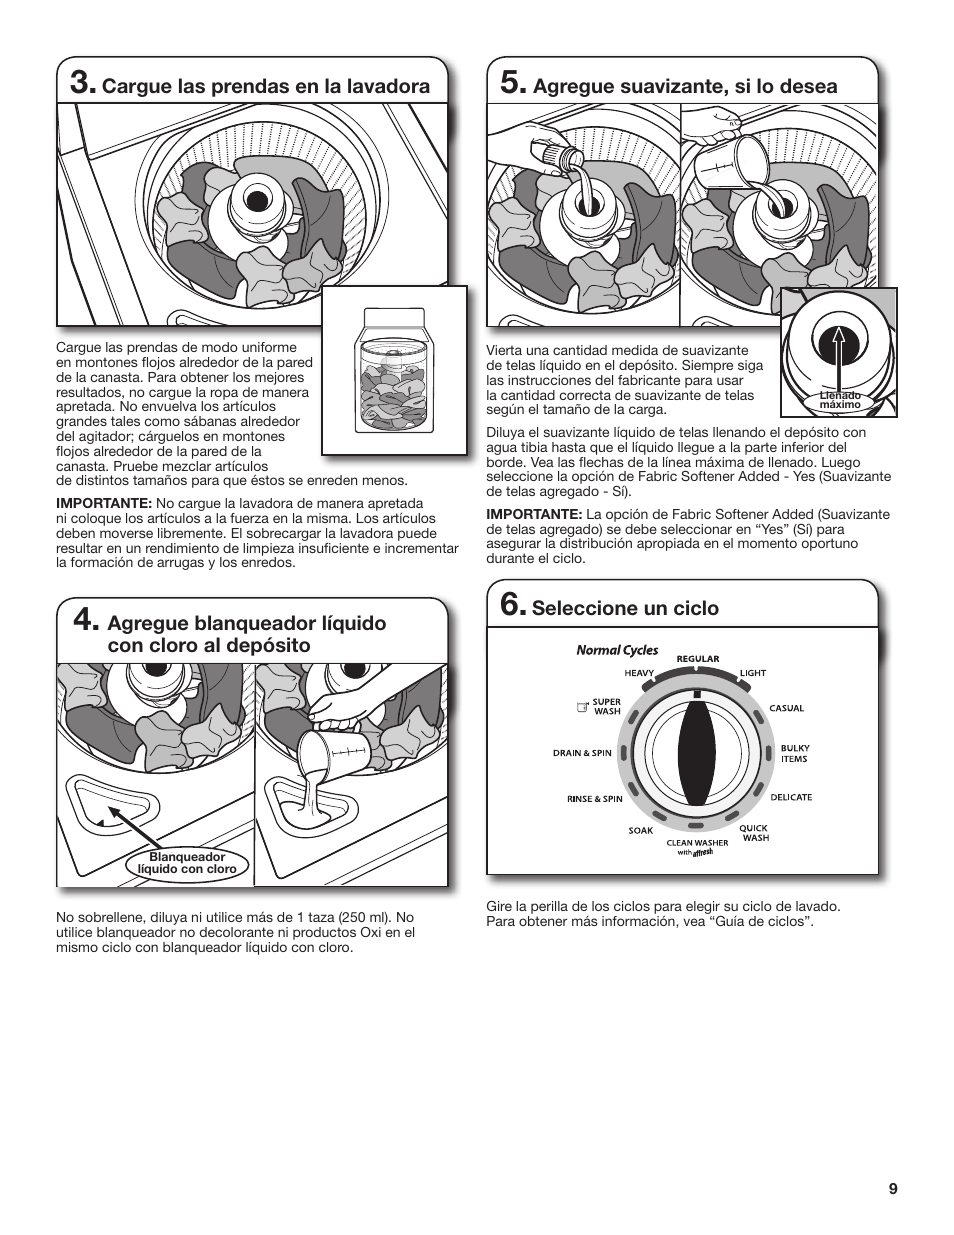 Agregue suavizante, si lo desea, Agregue blanqueador líquido con cloro al depósito, Cargue las prendas en la lavadora | Seleccione un ciclo | Whirlpool WTW4880AW Manual del usuario | Página 9 / 19